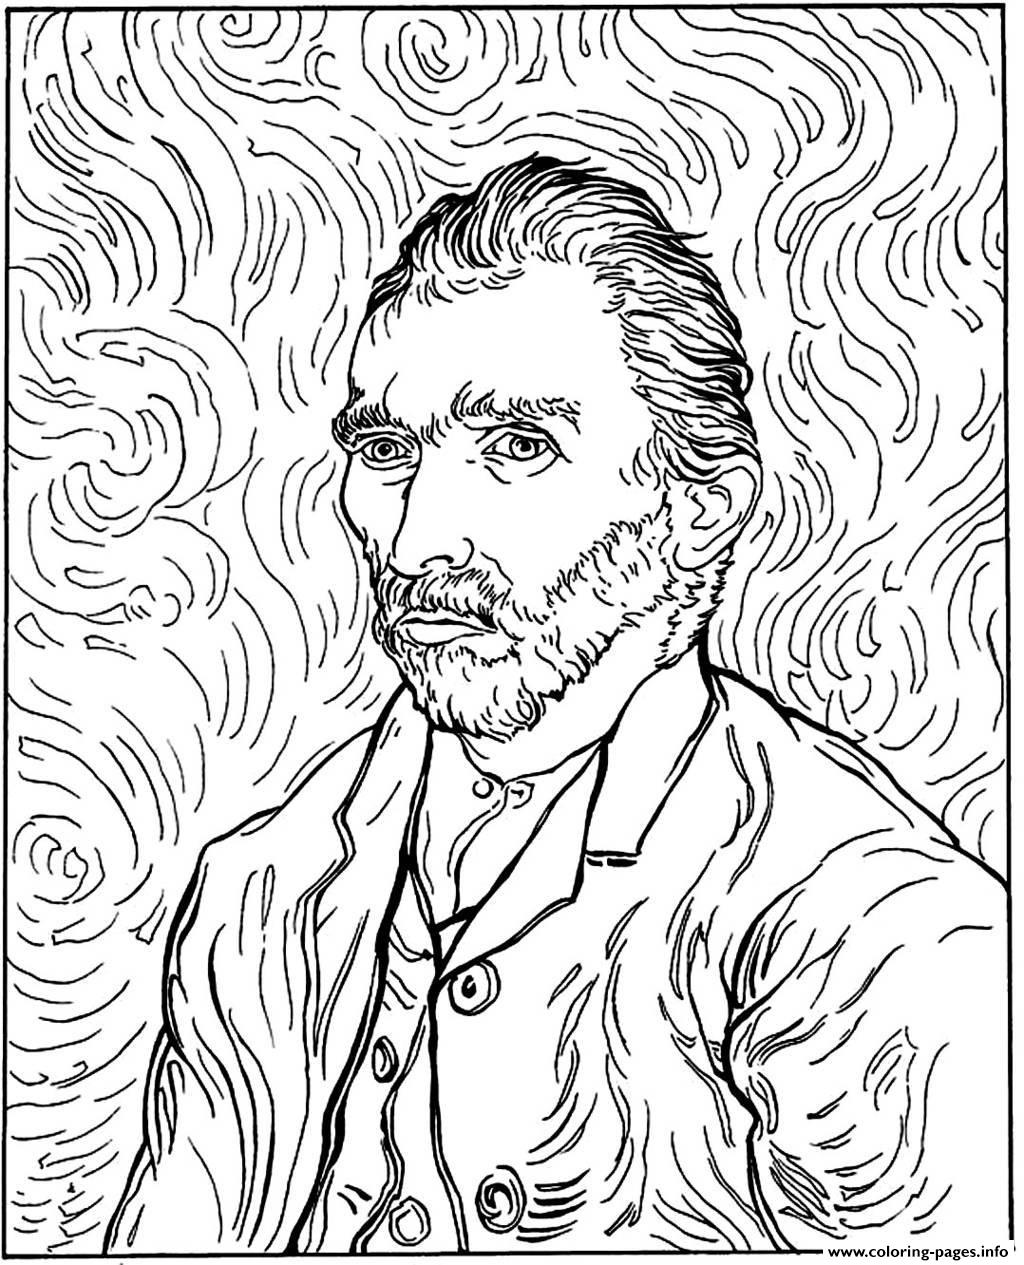 Adult Van Gogh Autoportrait Coloring Pages Printable Pdf